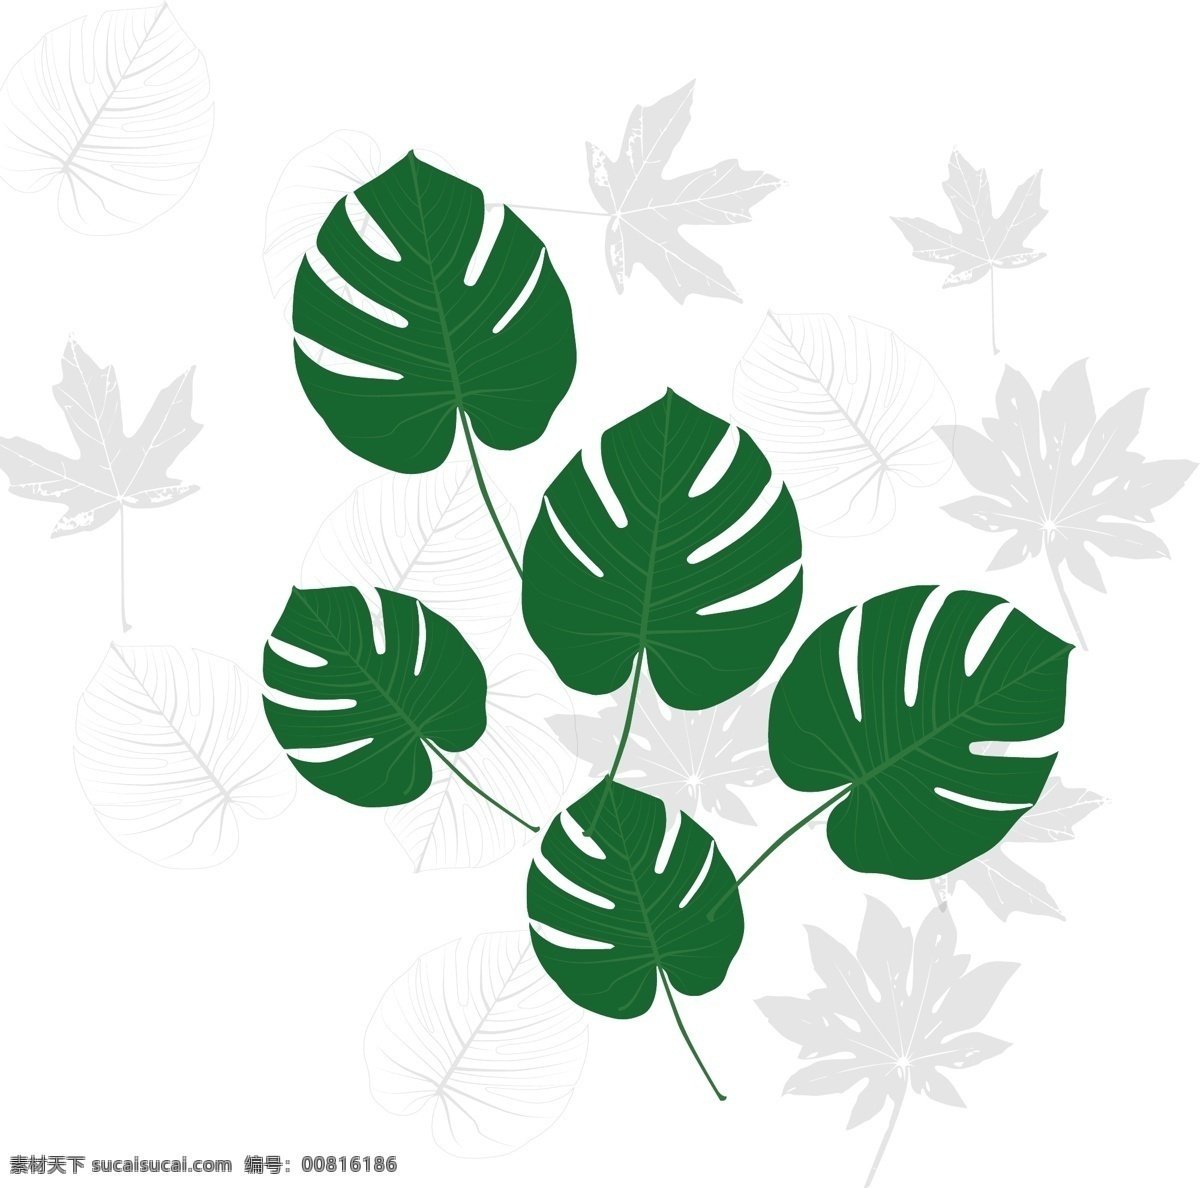 虚实 象生 风格 元素 树叶 热带植物 树叶素材